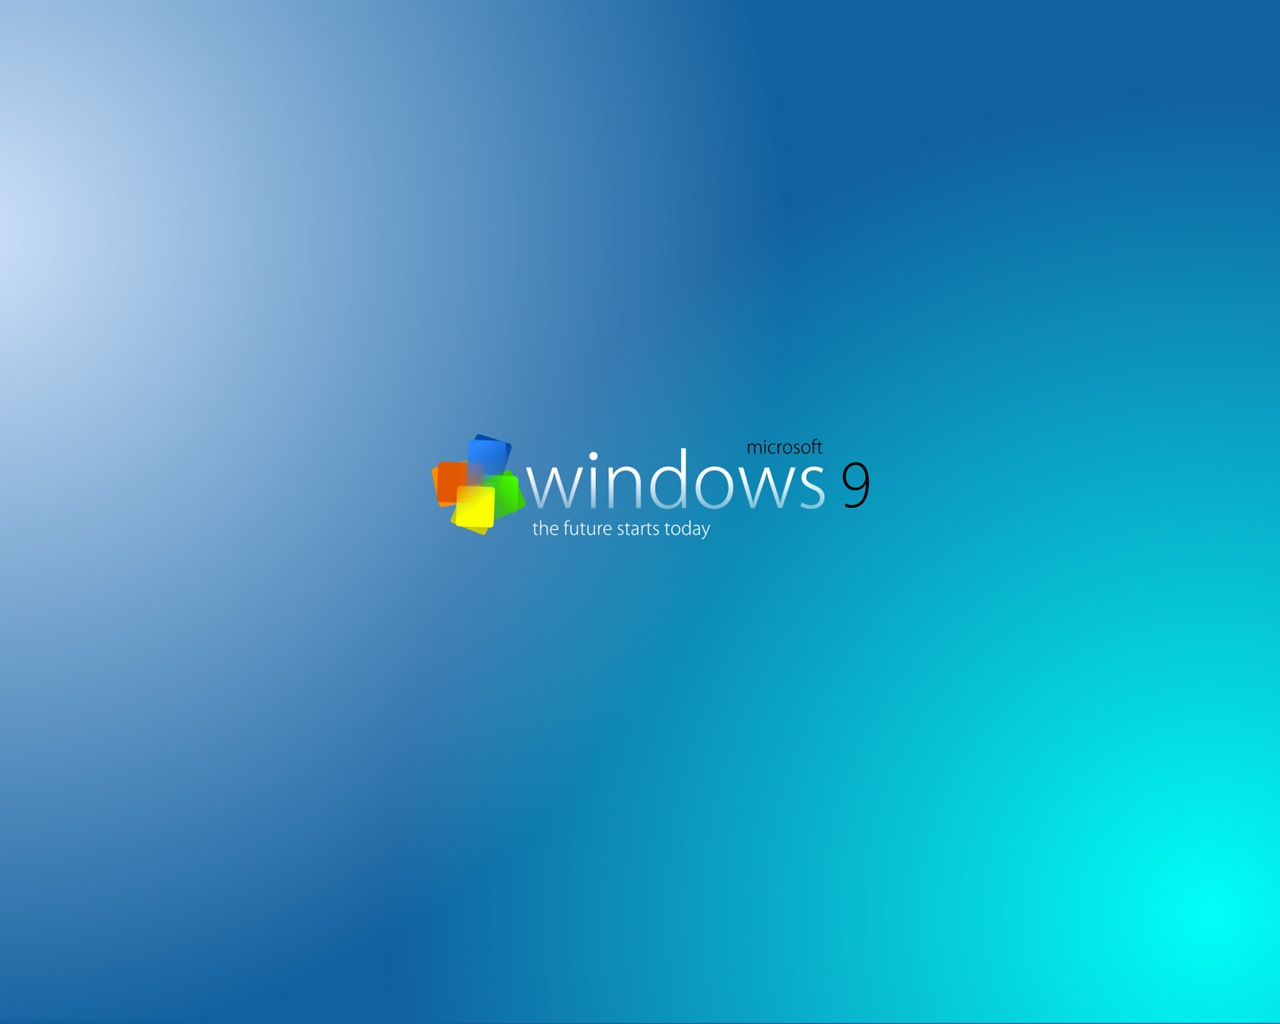 微软 Windows 9 系统主题 高清壁纸16 - 1280x1024